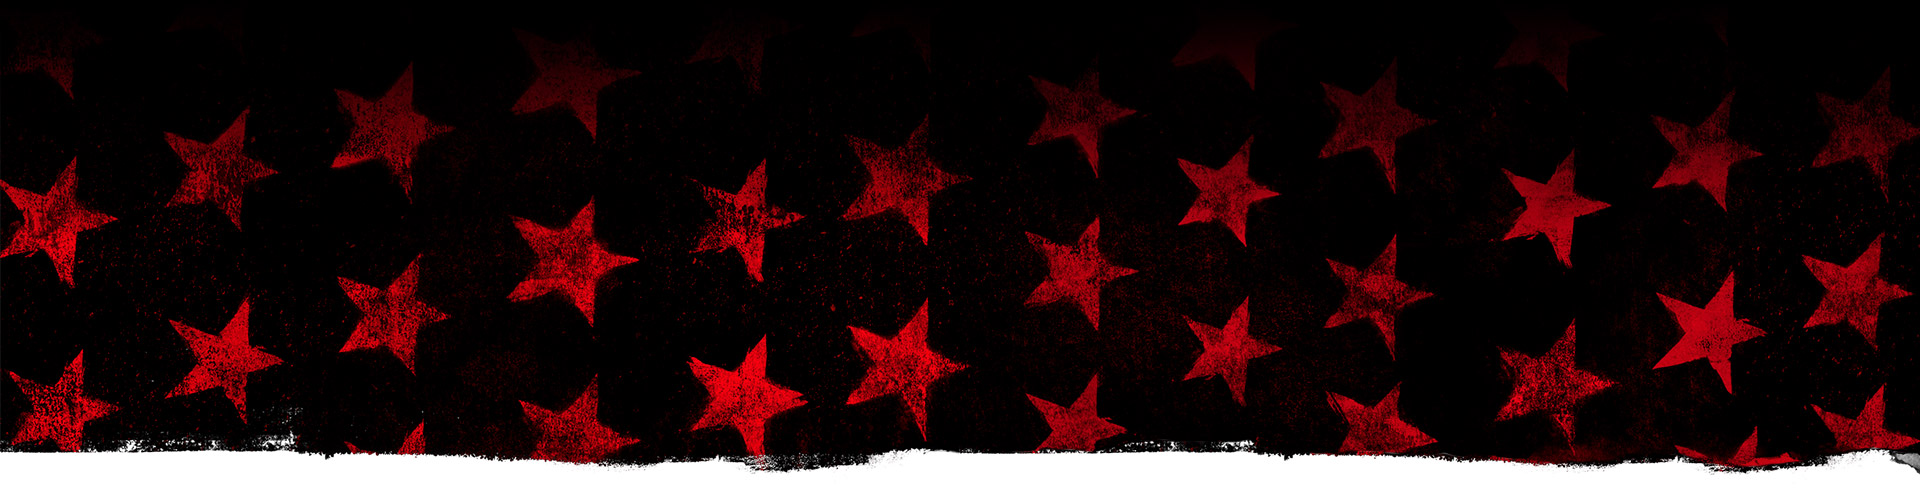 Estrellas rojas sobre un fondo negro.